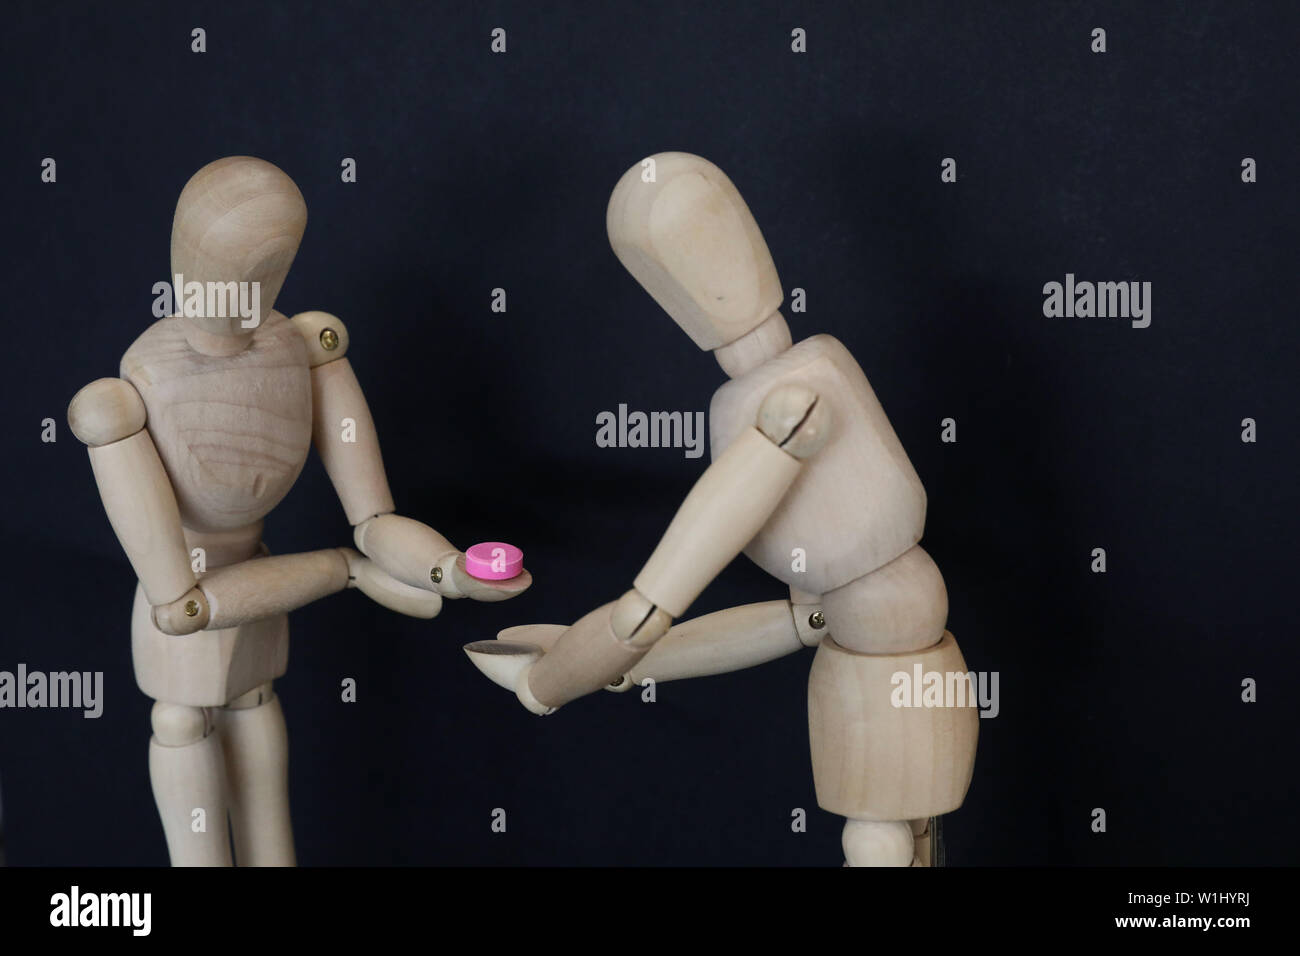 2 mannequins de bois l'un d'accepter une pilule rose tablet médicament de l'autre. La prise de médicaments illégaux décision choix concept. drug education awa Banque D'Images